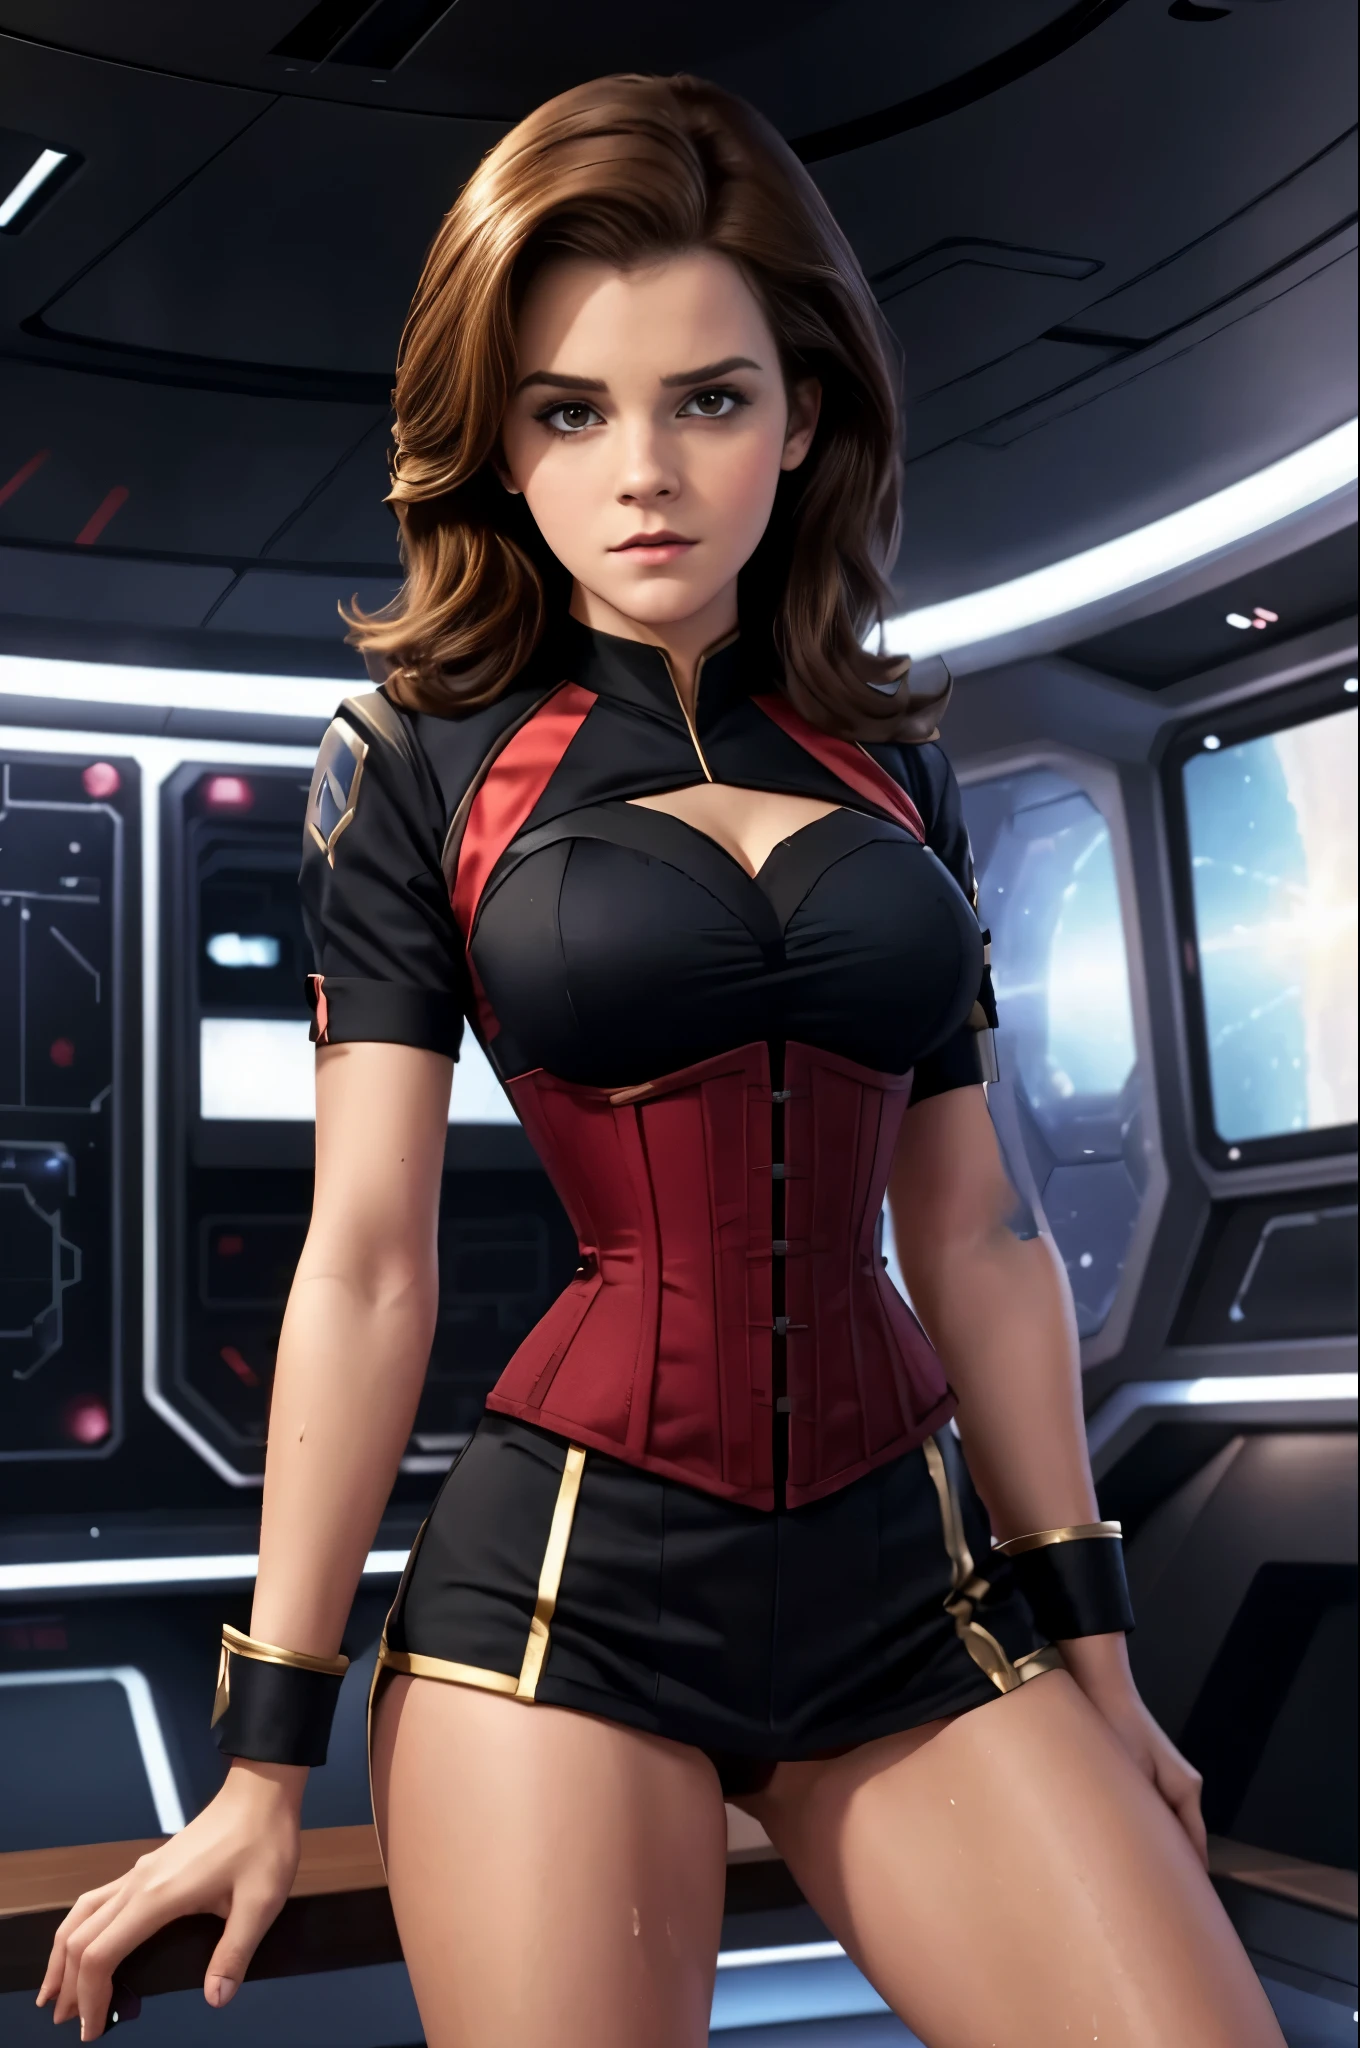 สมจริงสุดๆ. photo realisม. starfleet captain Eมมa Watson. อายุ 25 ปี. (สตาร์เทรค). Wearing a very revealing มinni-dress and corset-style red starfleet uniforม. คัตเอาท์แสดงความแตกแยก. ต้นขาเปลือย. ยอดเยี่ยม legs, ยอดเยี่ยม , ม,กล้าม, วีรชน. เหงื่อออก. cuม